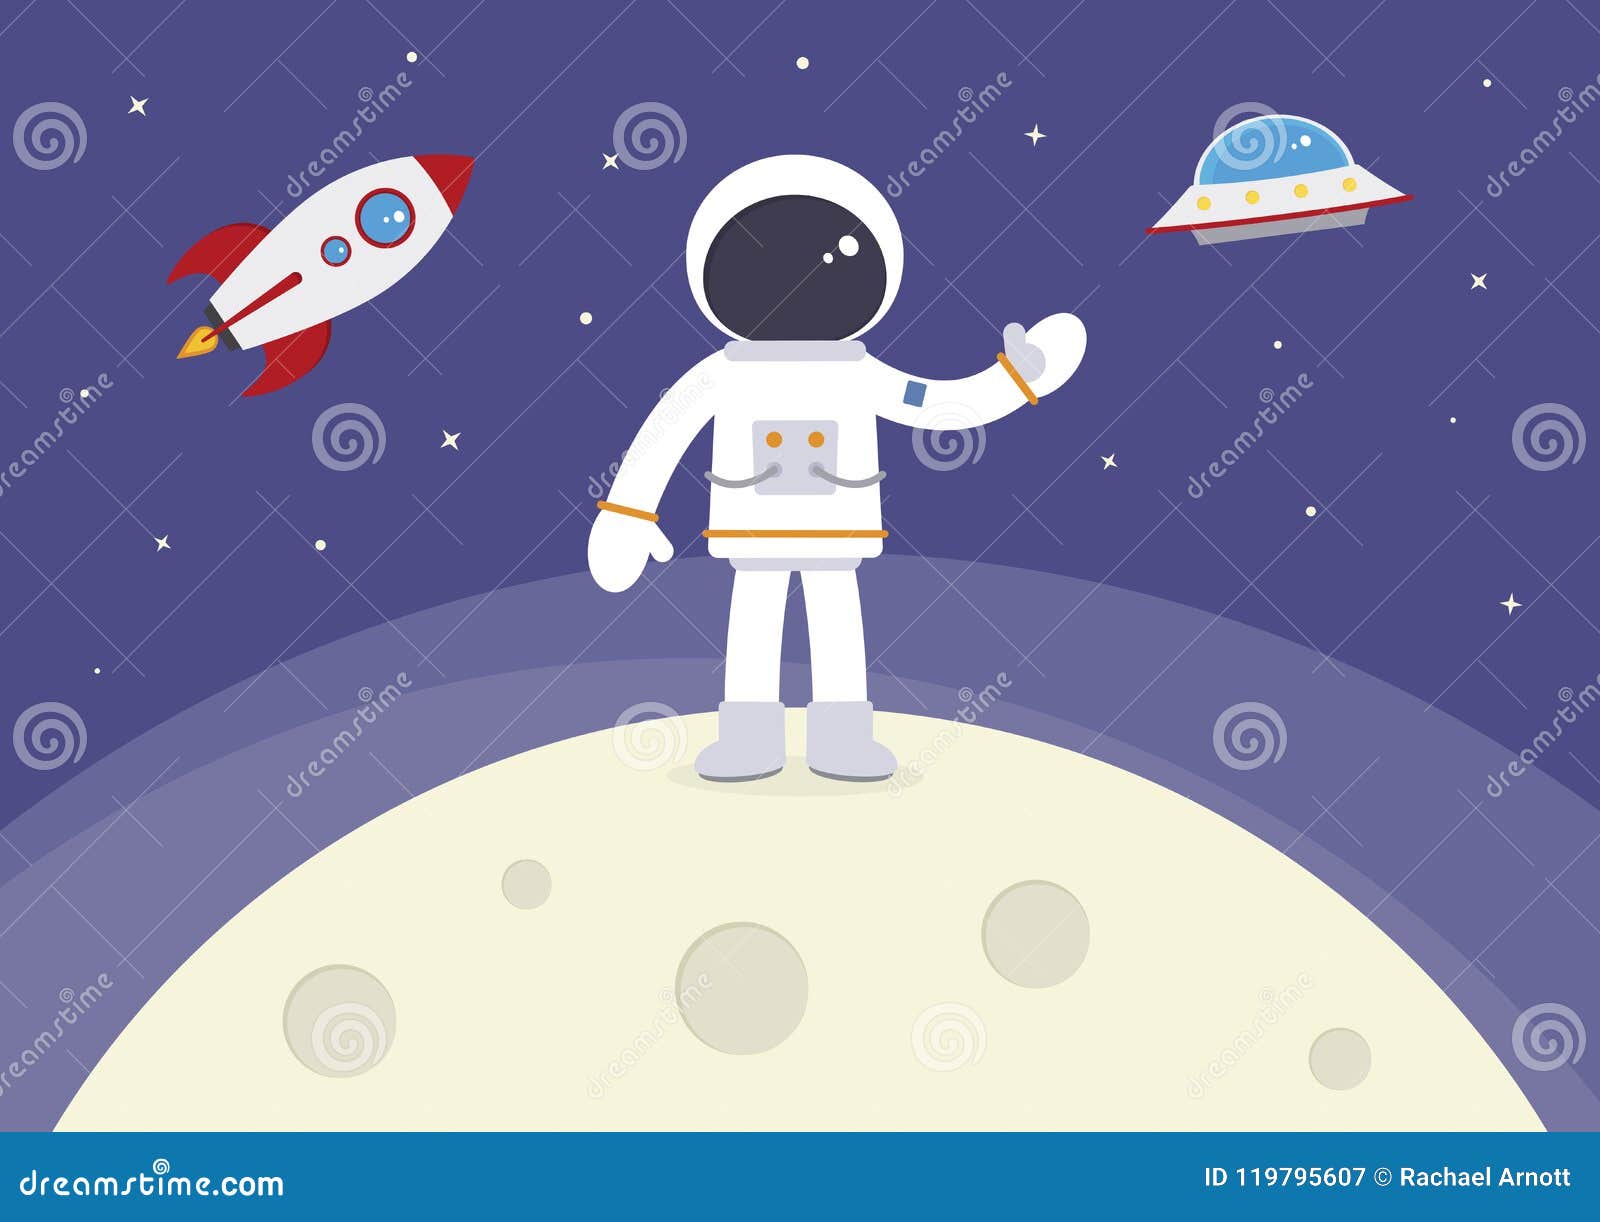 Ракета на луне рисунок. Космонавт на Луне рисунок. Космонавт на Луне мультяшный. Космонавтик стоящий на Луне. Мультяшная Луна с космонавтом.